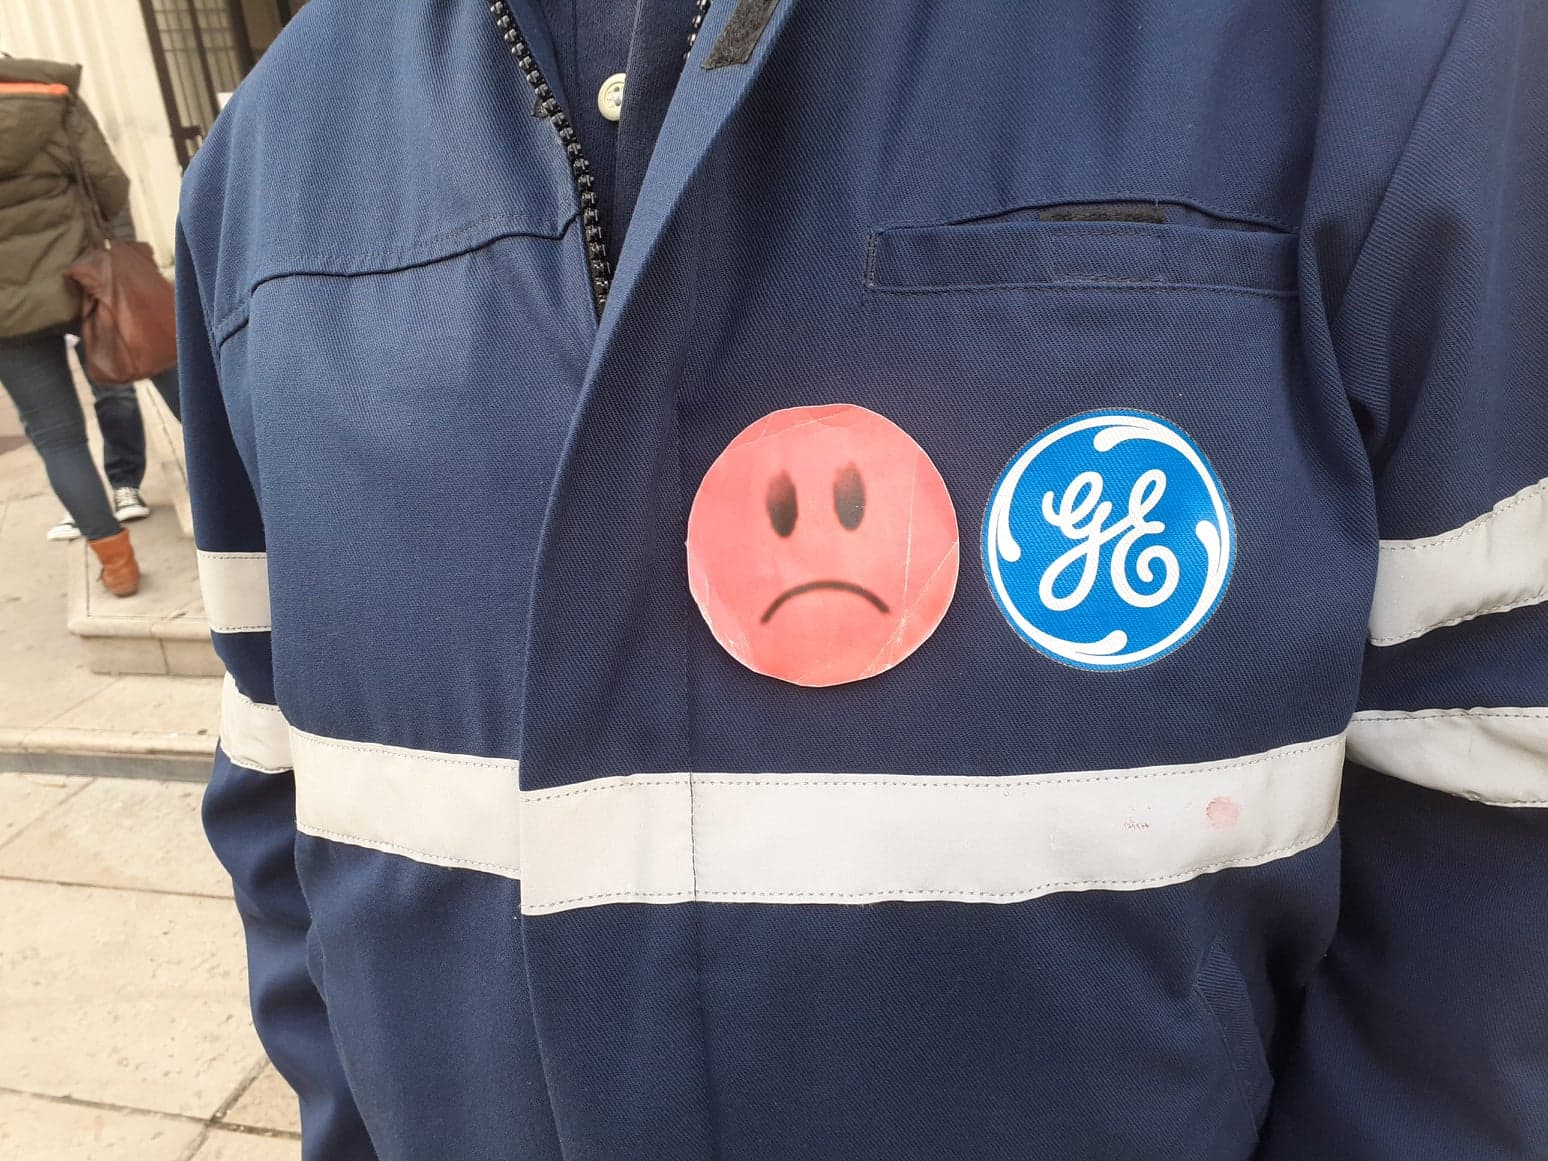 General Electric : À Villeurbanne, des Stocks-Options qui ne passent pas